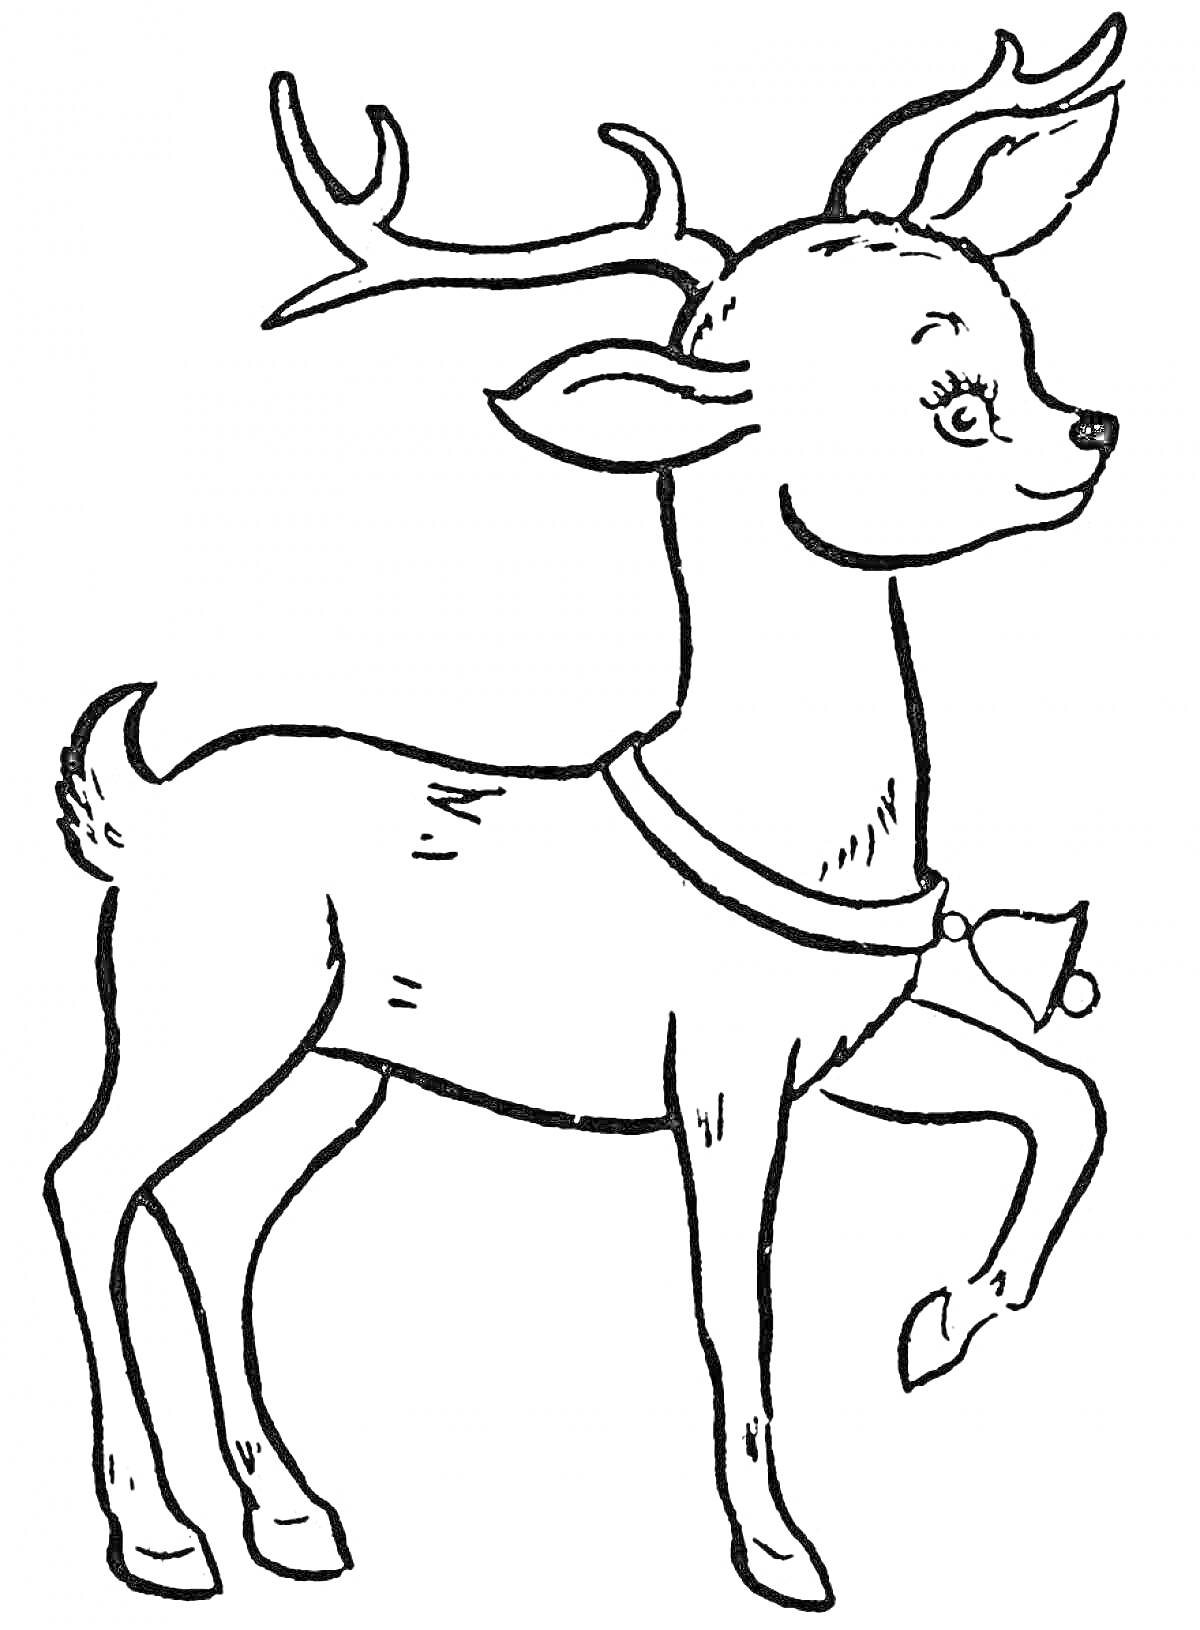 Раскраска Новогодний олень с колокольчиком на шее